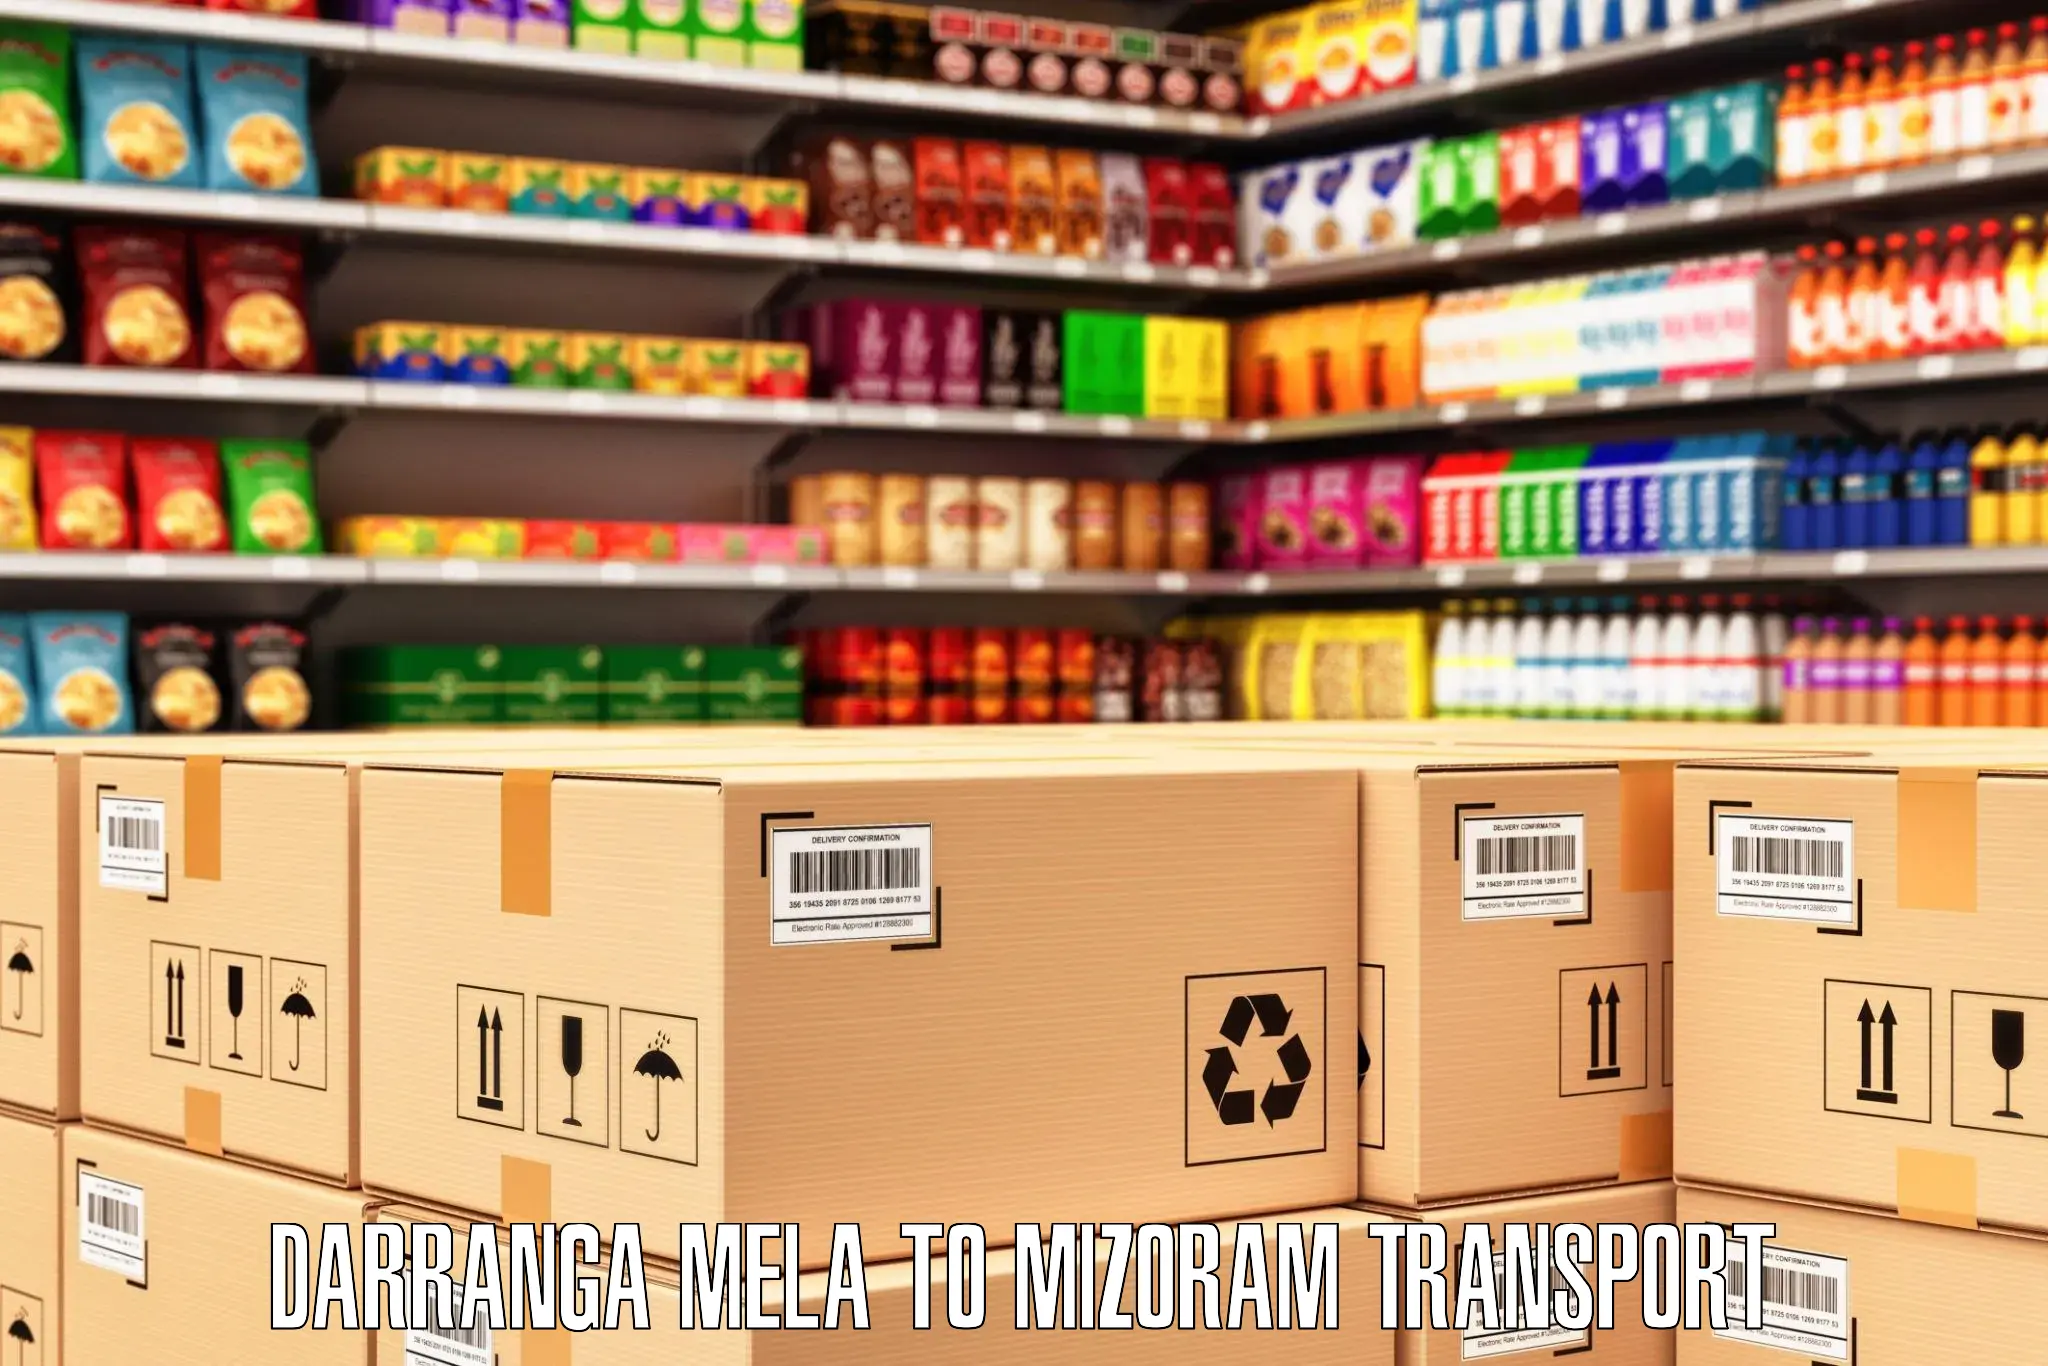 International cargo transportation services Darranga Mela to Aizawl